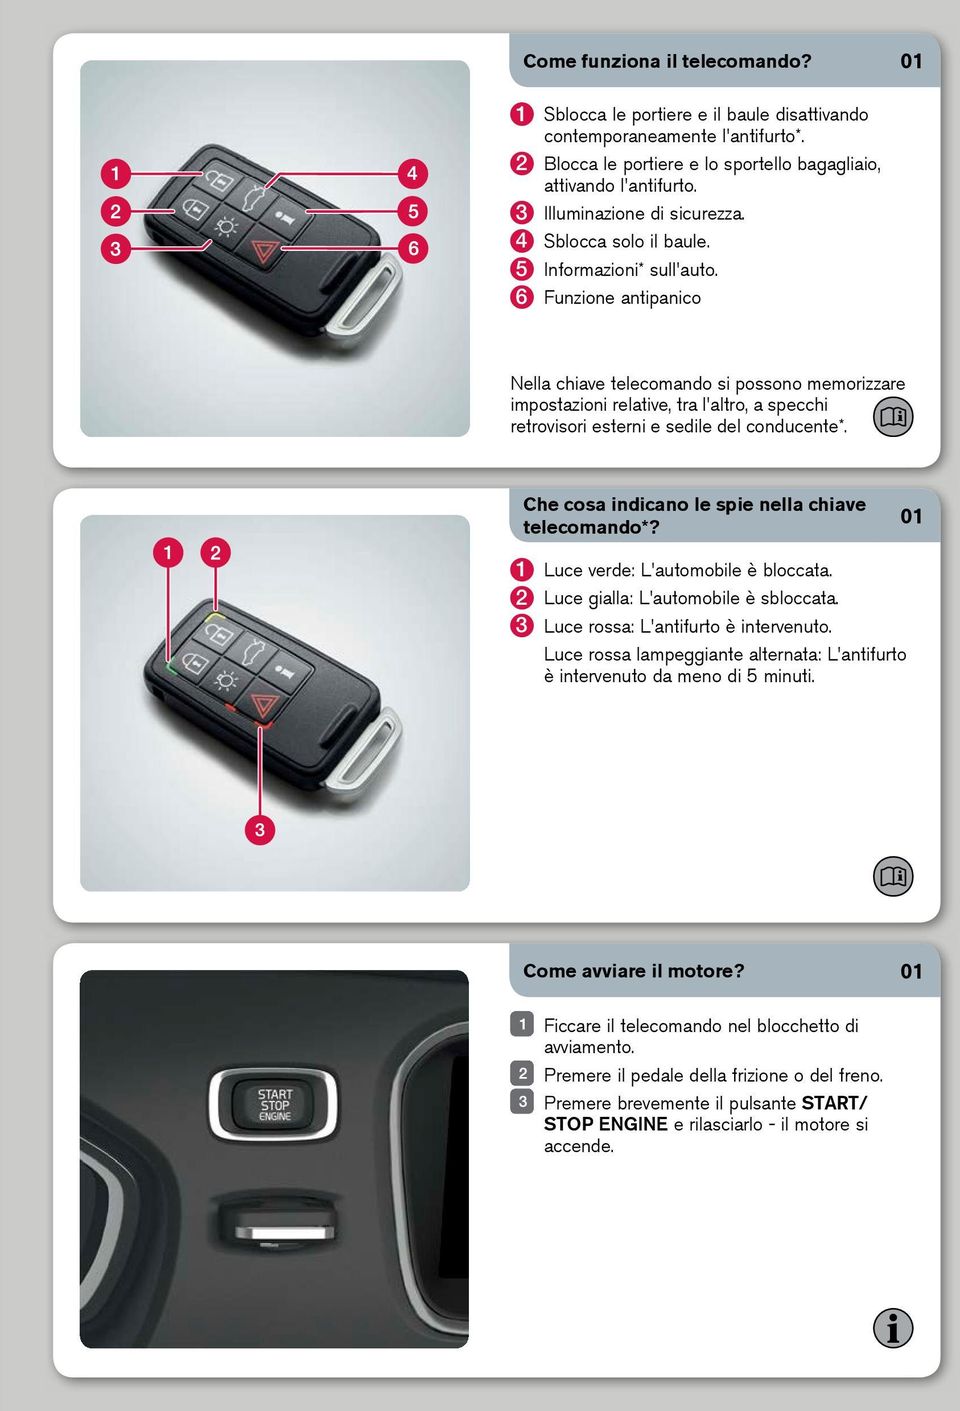 6 Funzione antipanico Nella chiave telecomando si possono memorizzare impostazioni relative, tra l'altro, a specchi retrovisori esterni e sedile del conducente*.